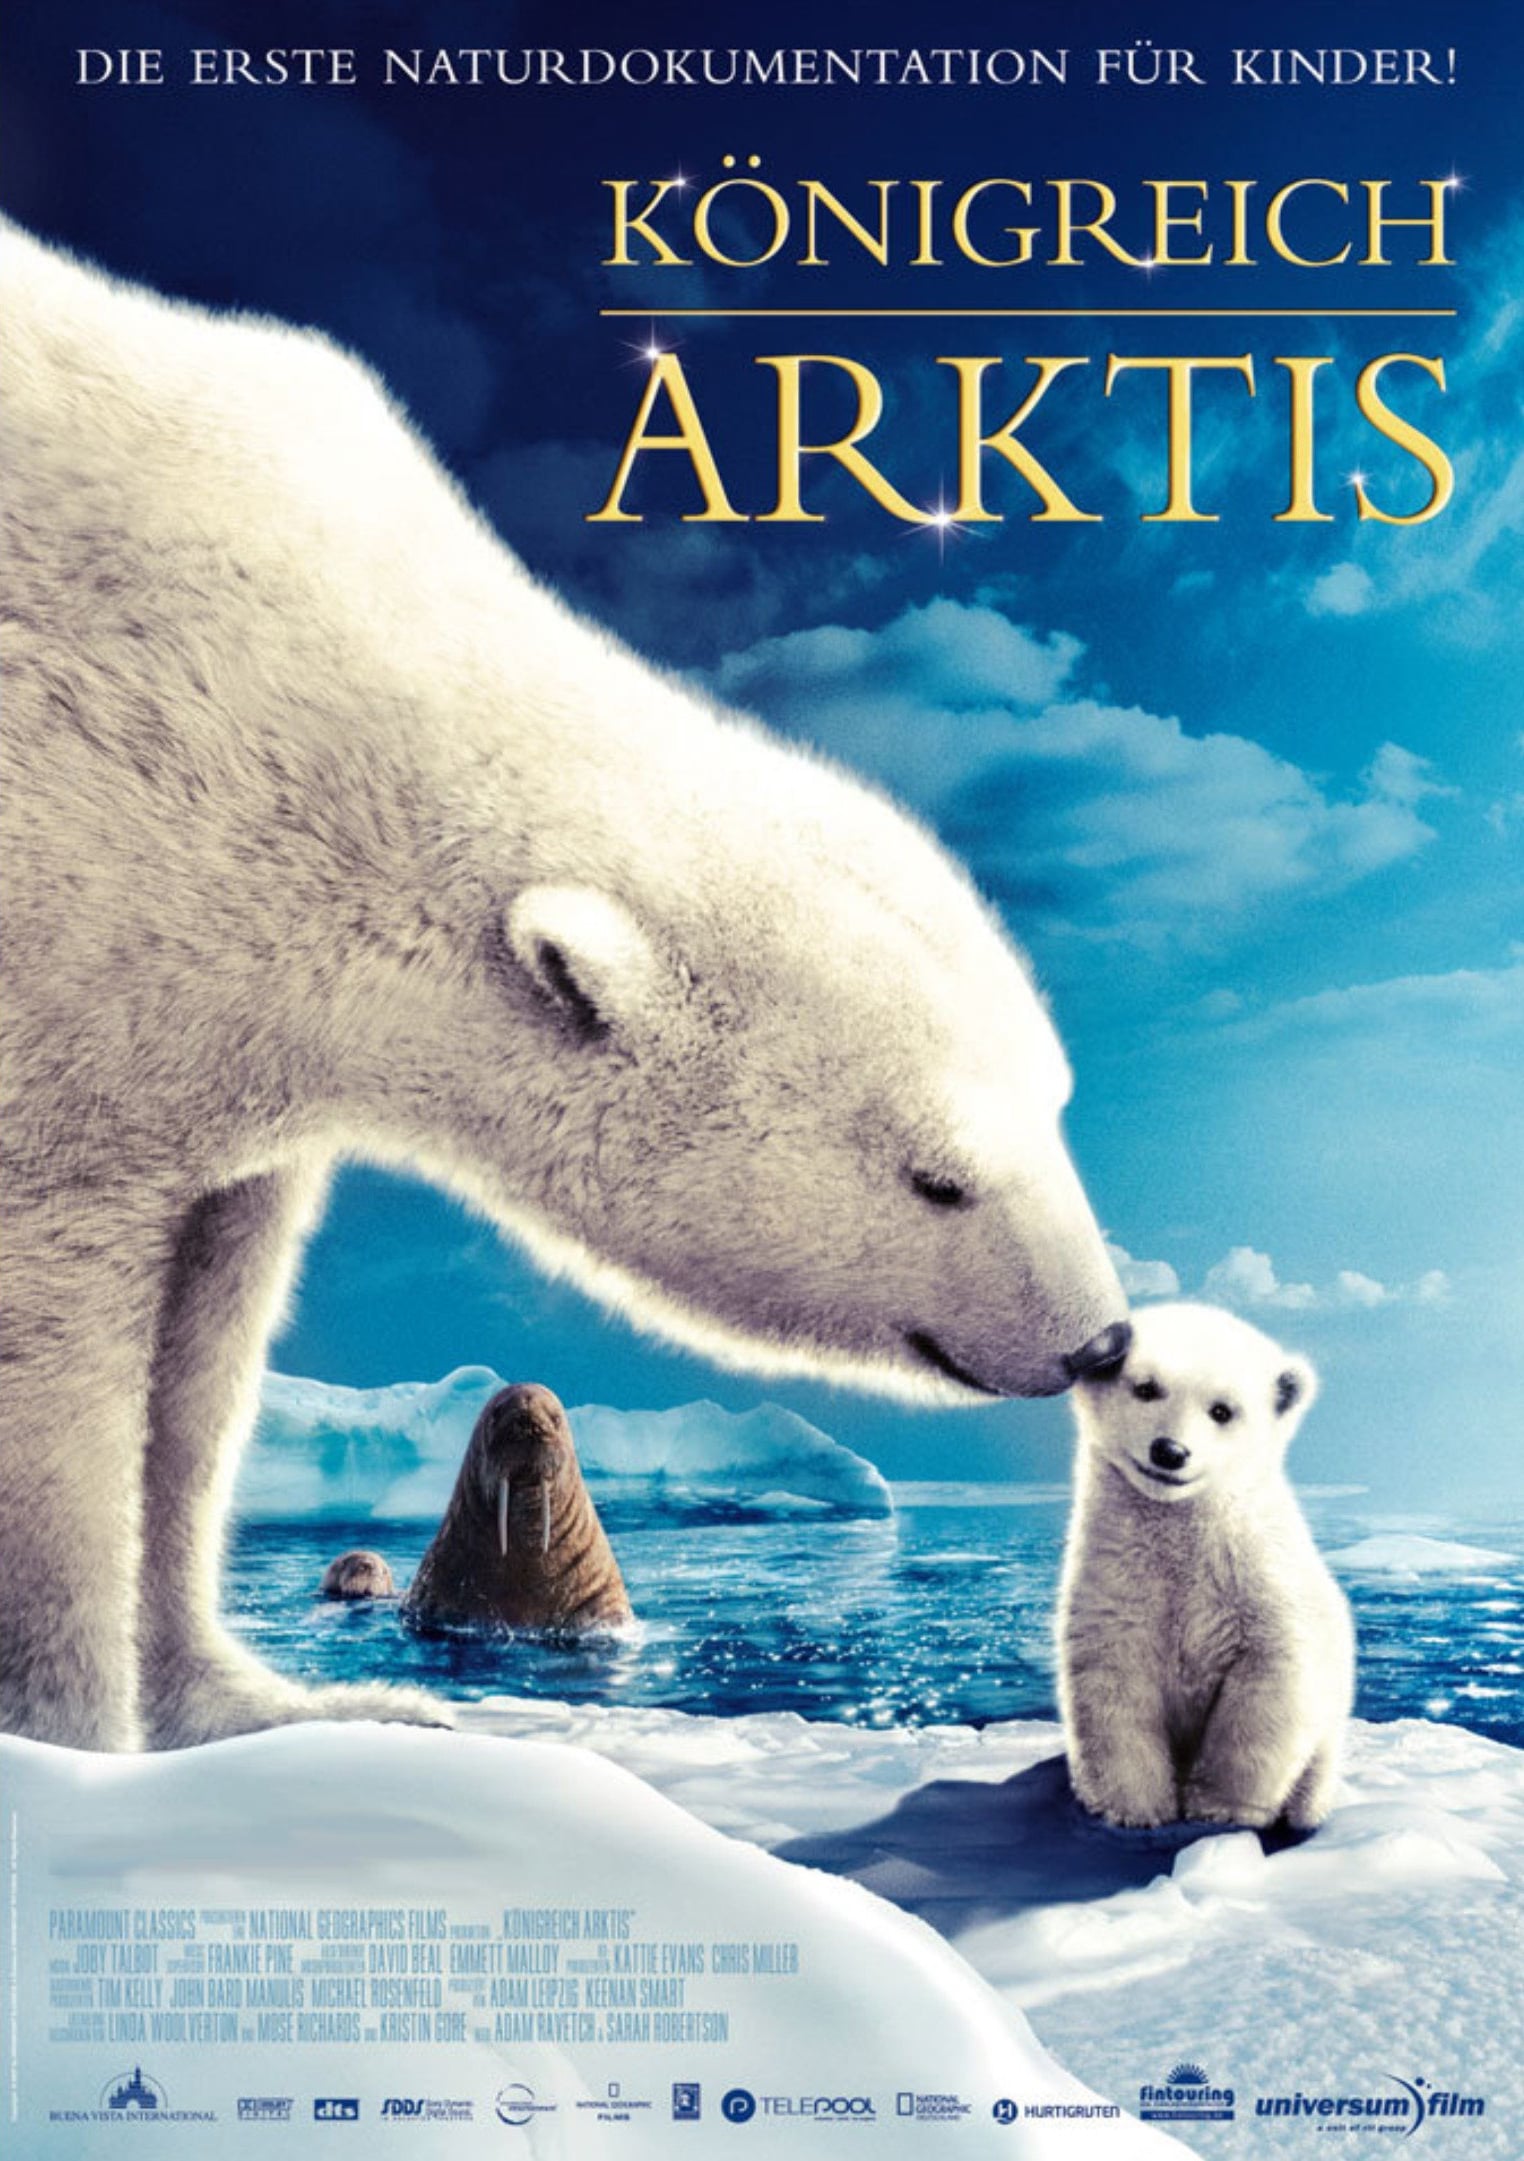 Plakat von "Königreich Arktis"